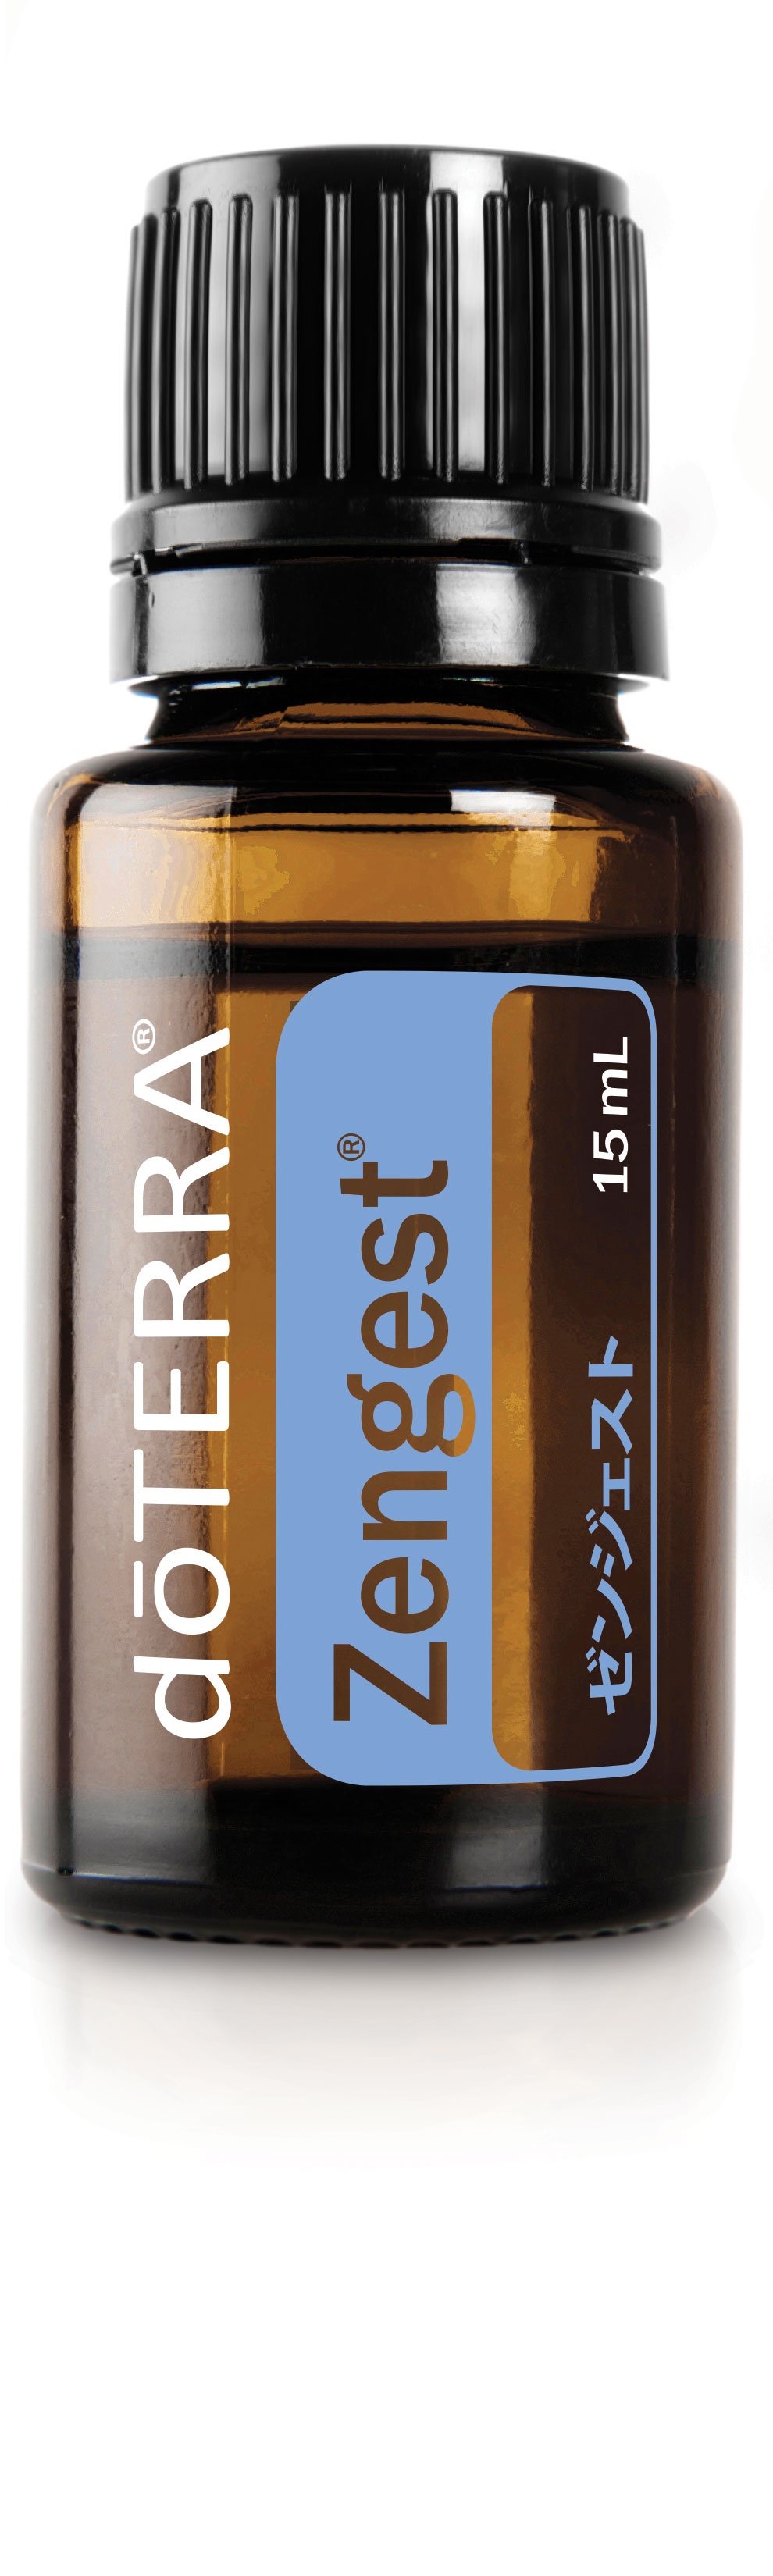 ゼンジェスト | doTERRA エッセンシャルオイル | doTERRA Essential Oils